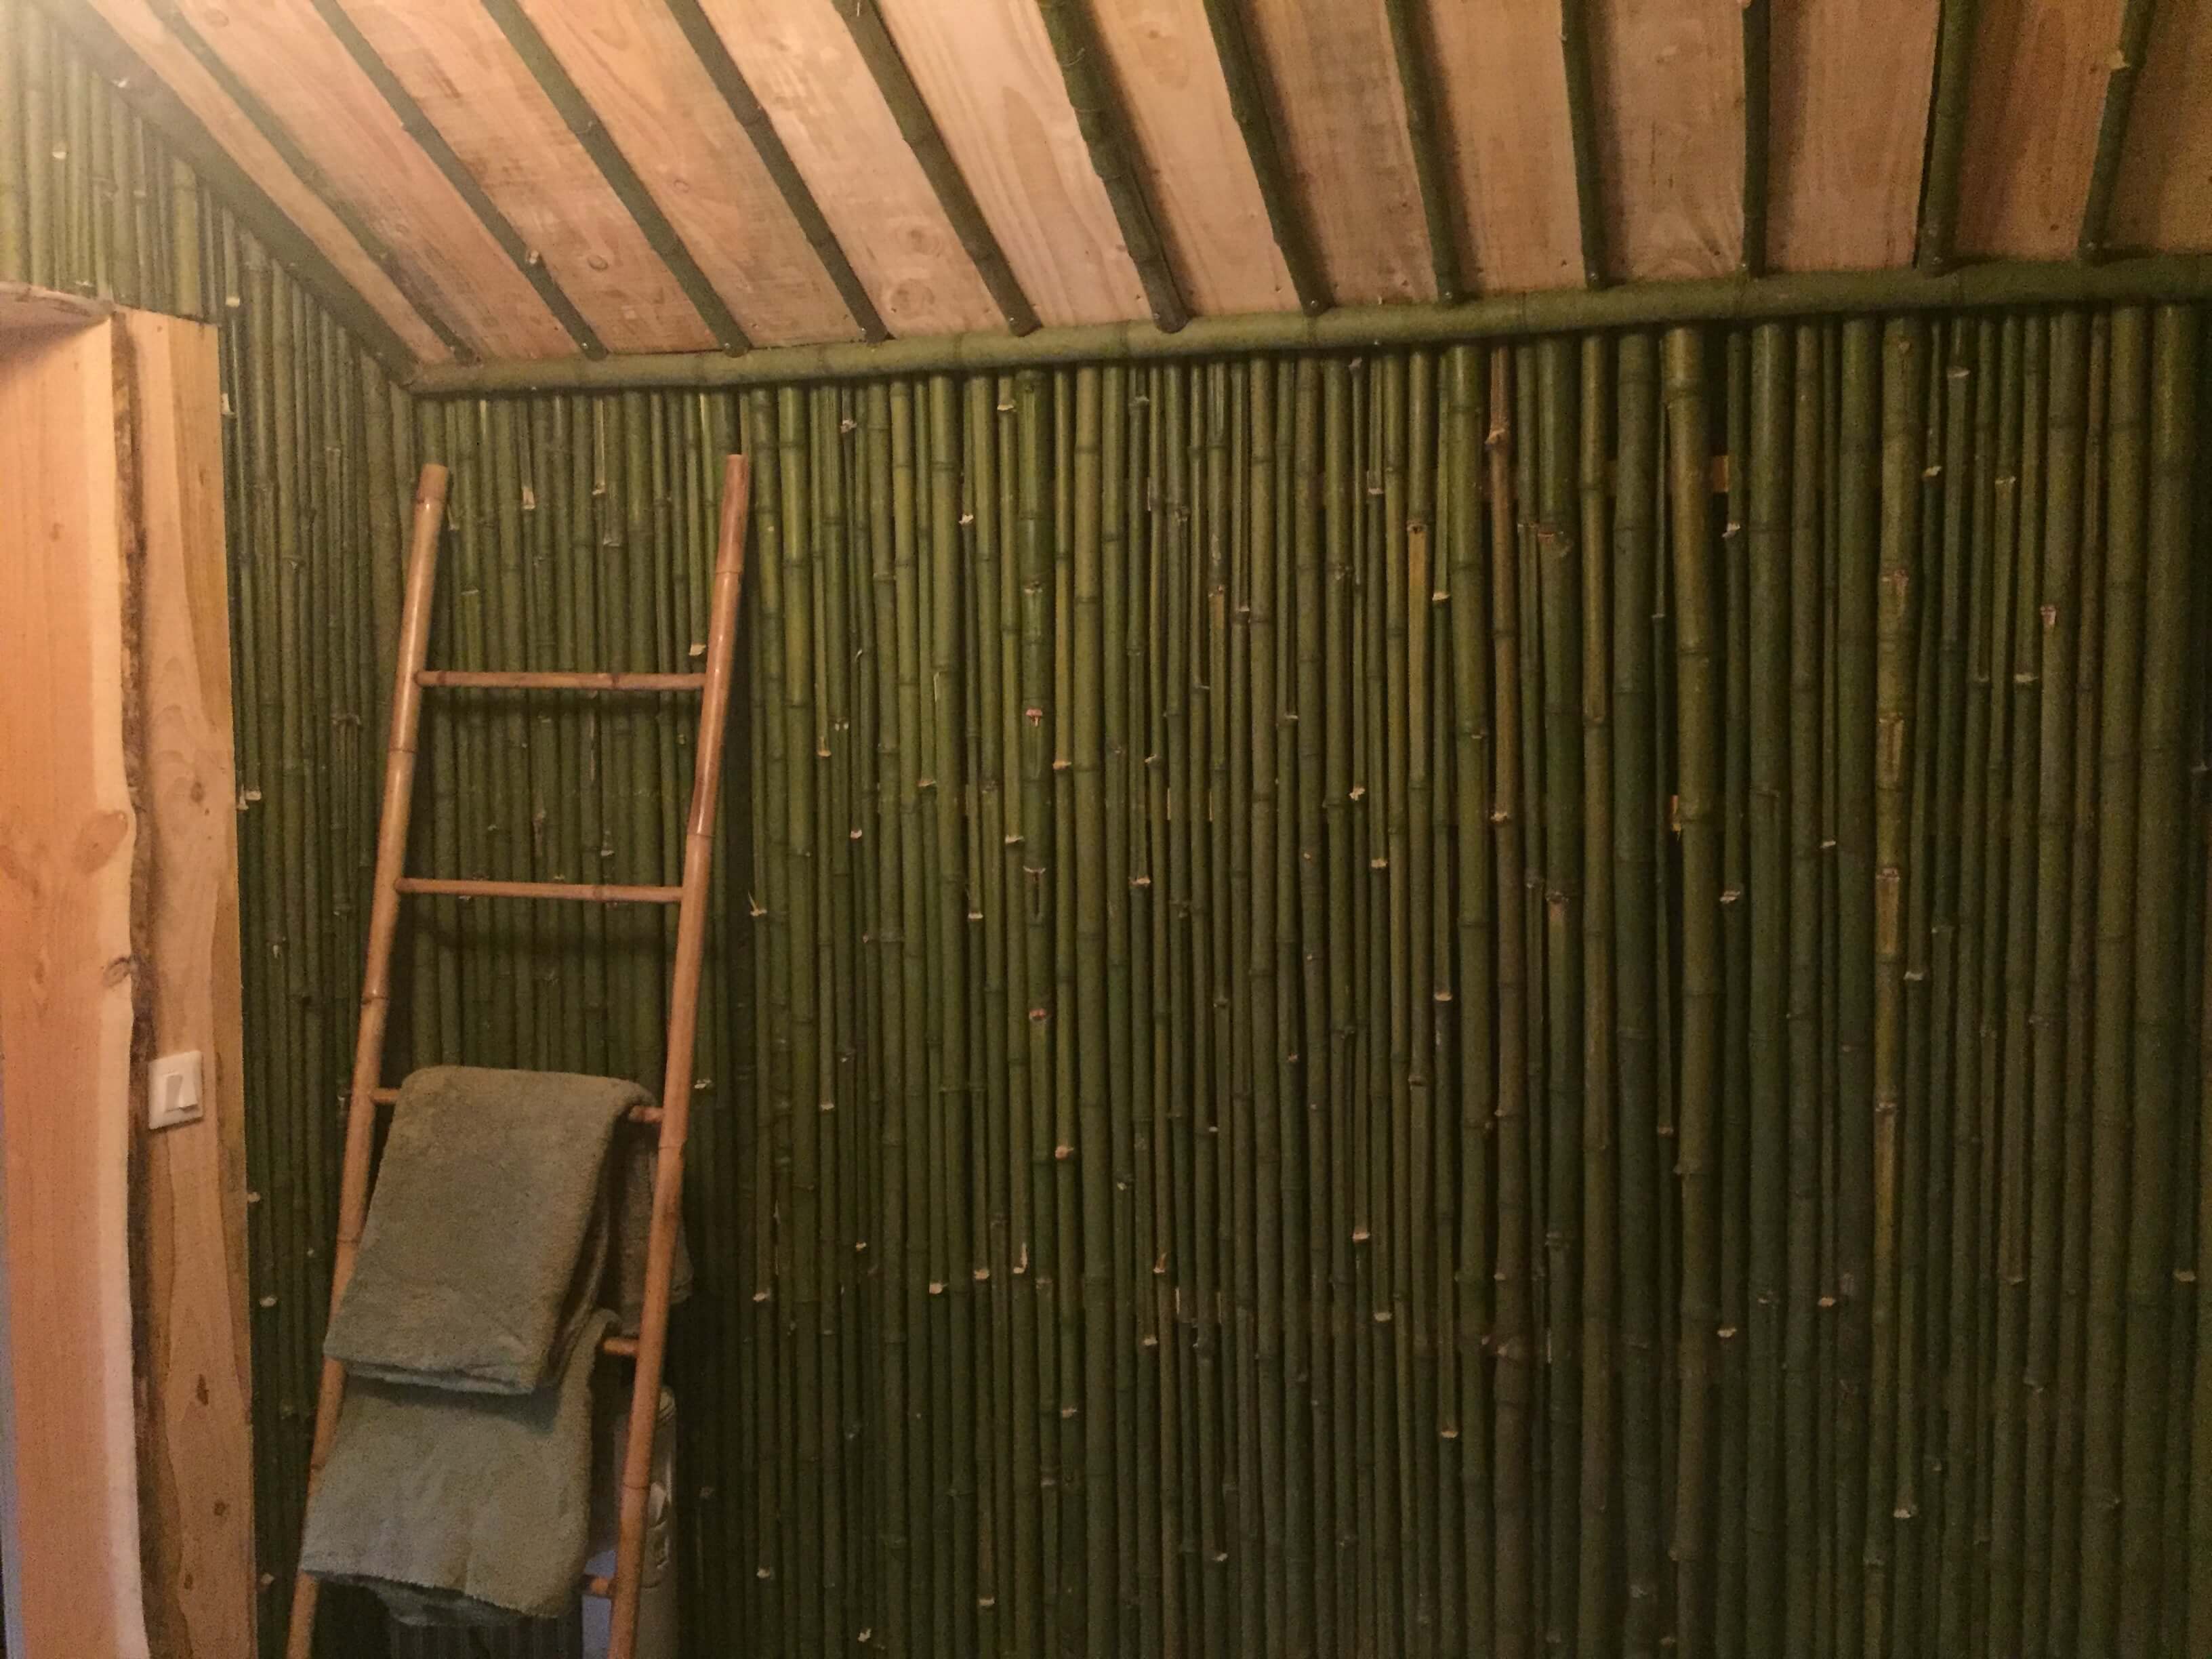 Cabane des bambous we en amoureux au chaud